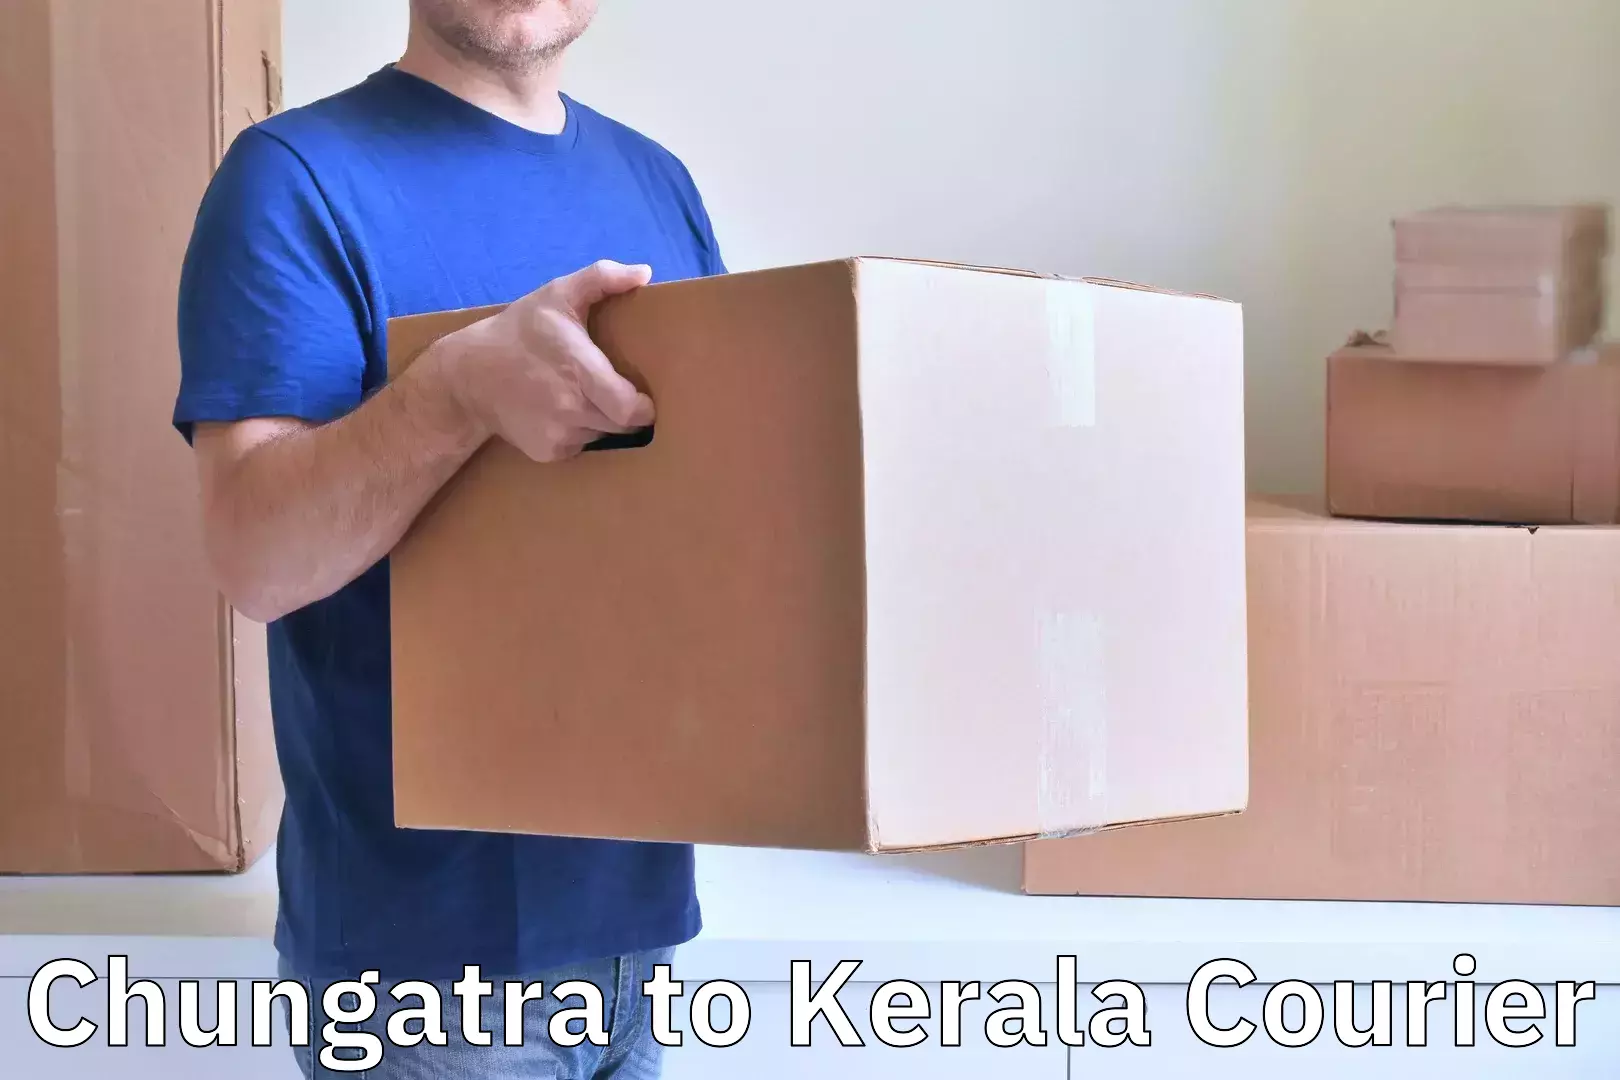 Luggage delivery optimization Chungatra to Kuttiady